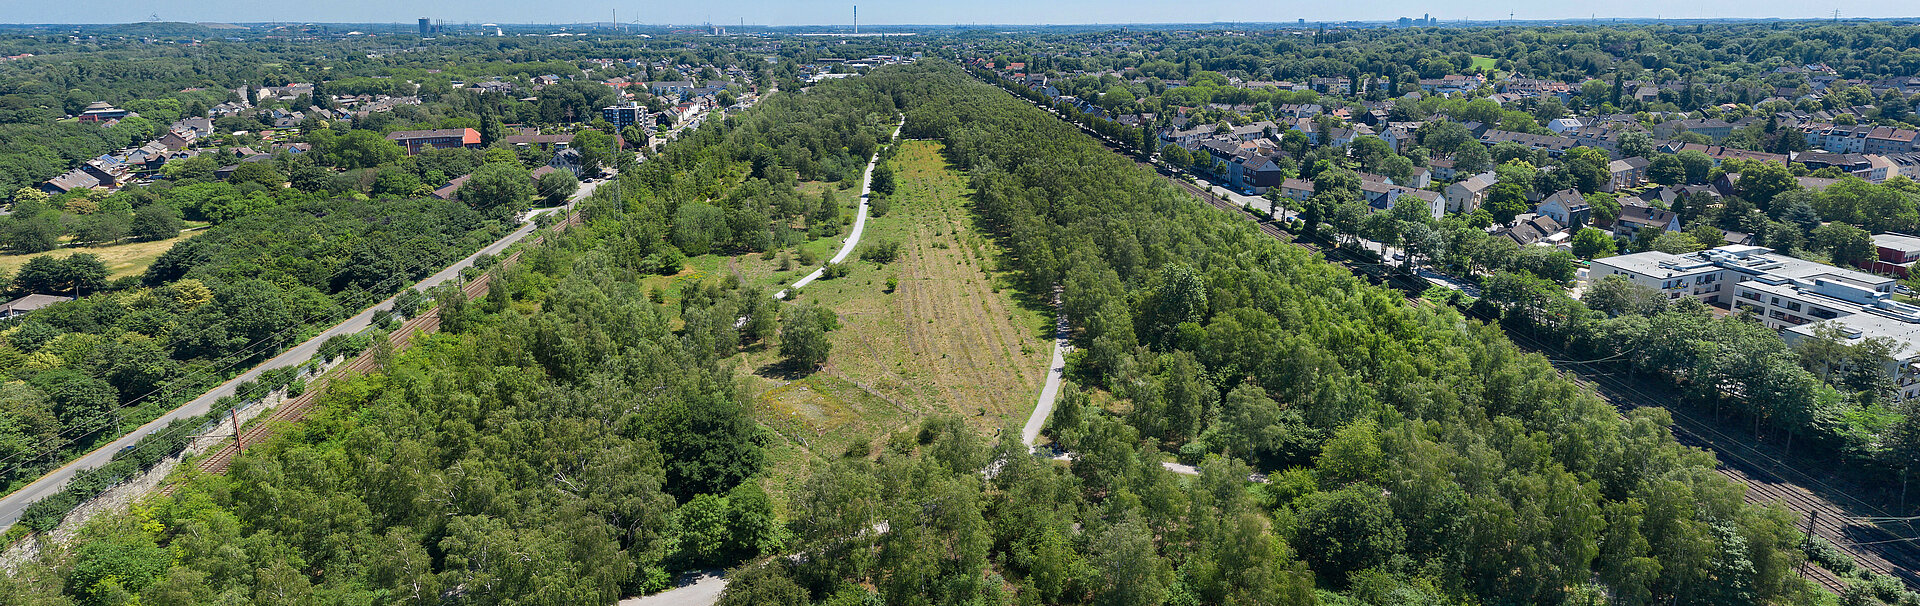 Luftbild vom Gleispark Frintrop und dem angrenzenden Wohnumfeld